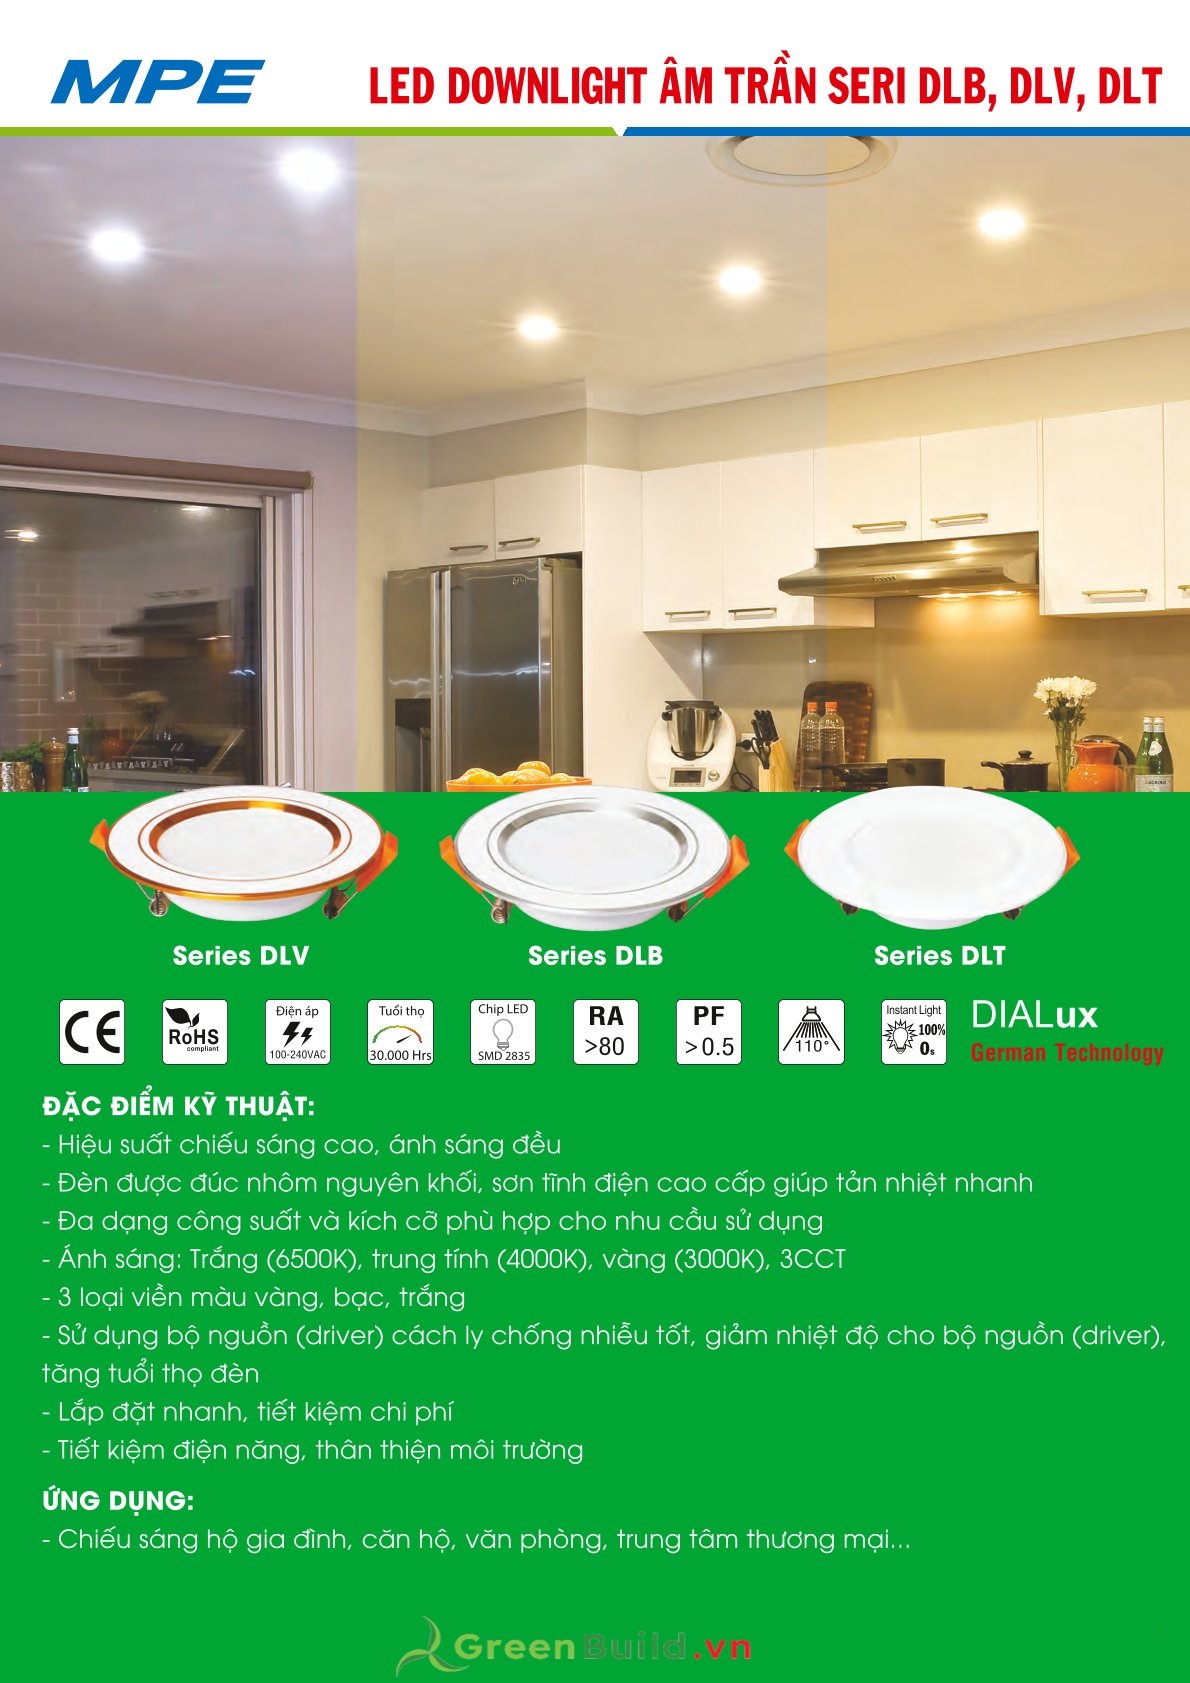 Greenbuild - Đèn LED downlight MPE DLT 12W [DLT-12T/V/N], đèn downlight âm trần chất lượng cao, đèn LED MPE được bảo hành lâu dài